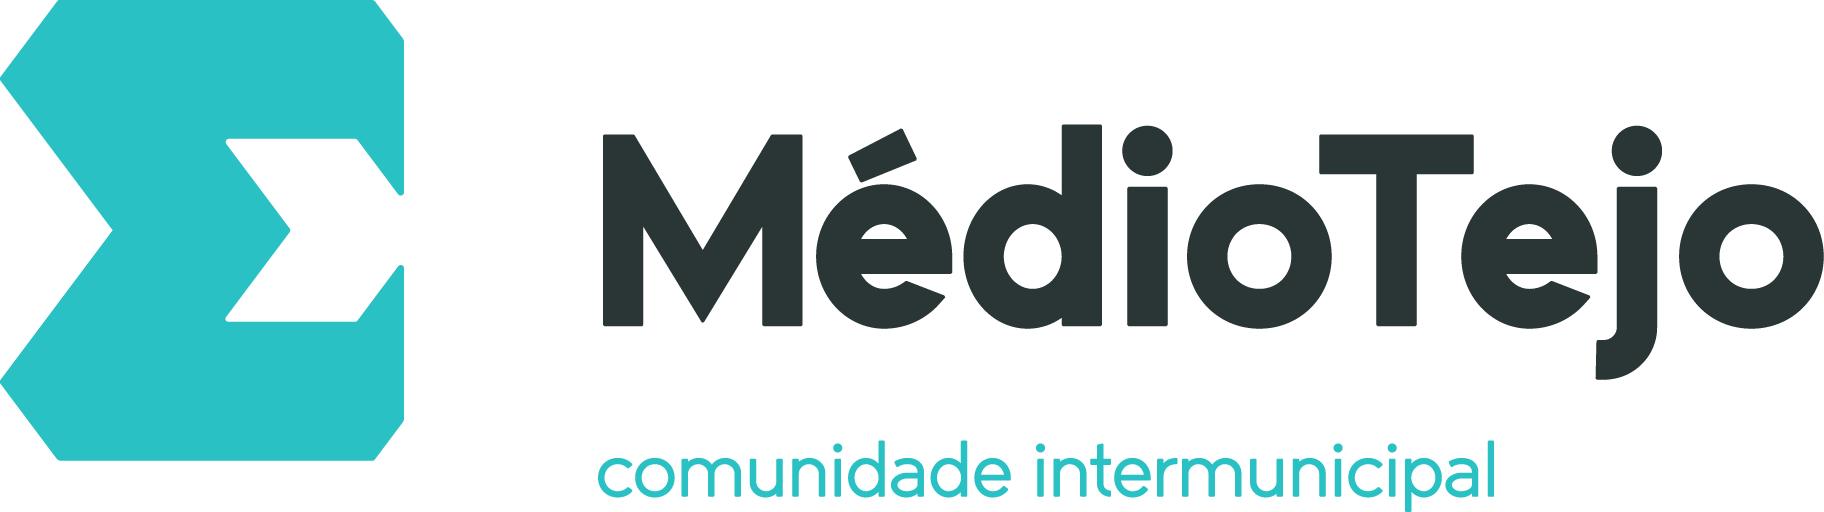 Logotipo Médio Tejo - Comunidade intermunicipal